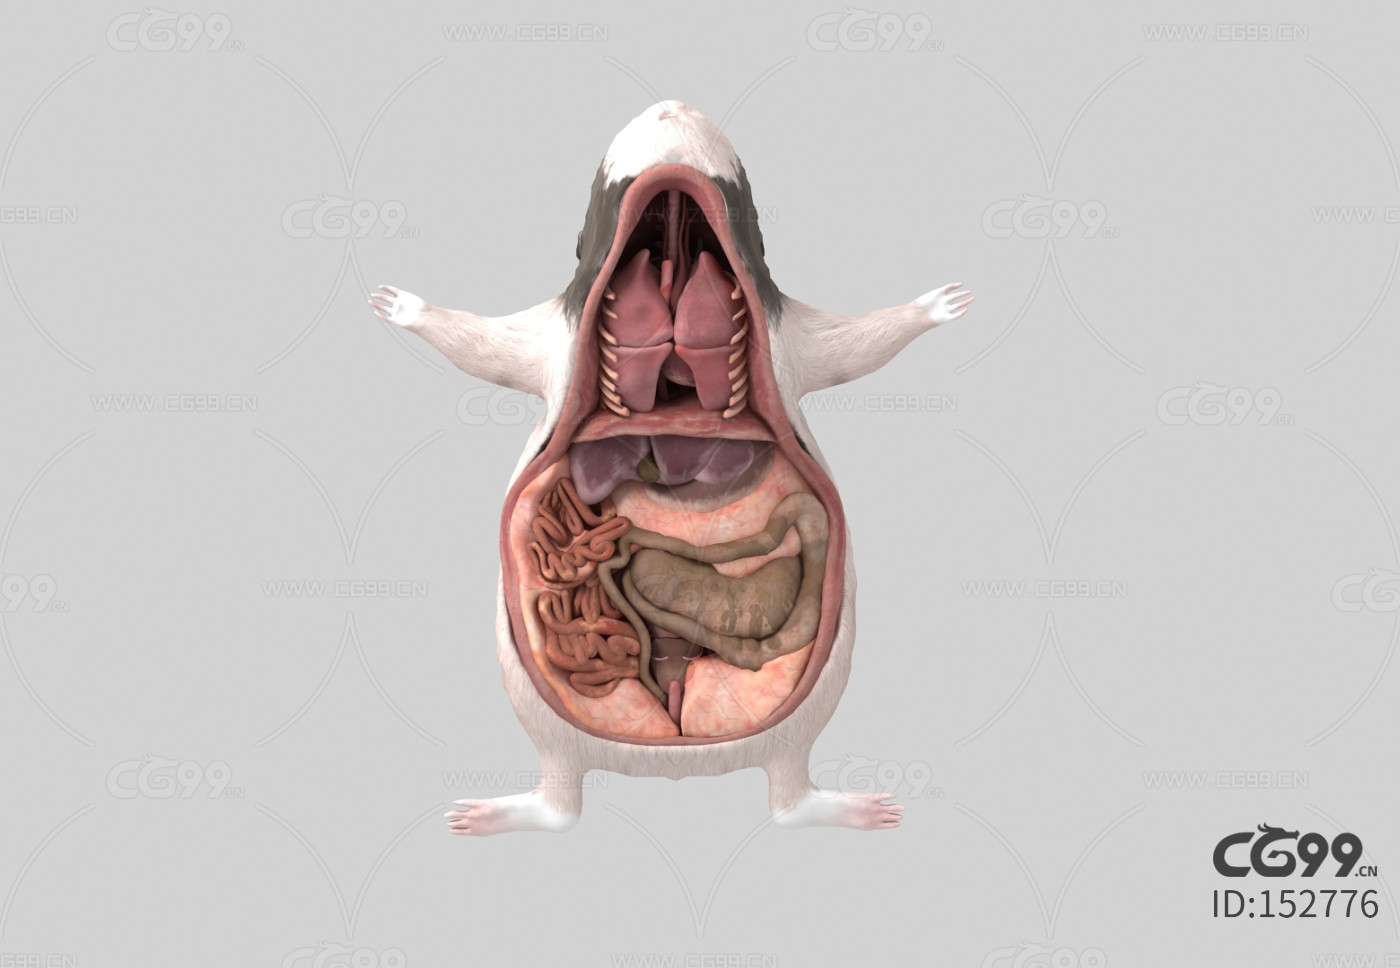 老鼠内脏器官 老鼠解剖 豚鼠内部解剖学研究 动物解剖 动物内脏